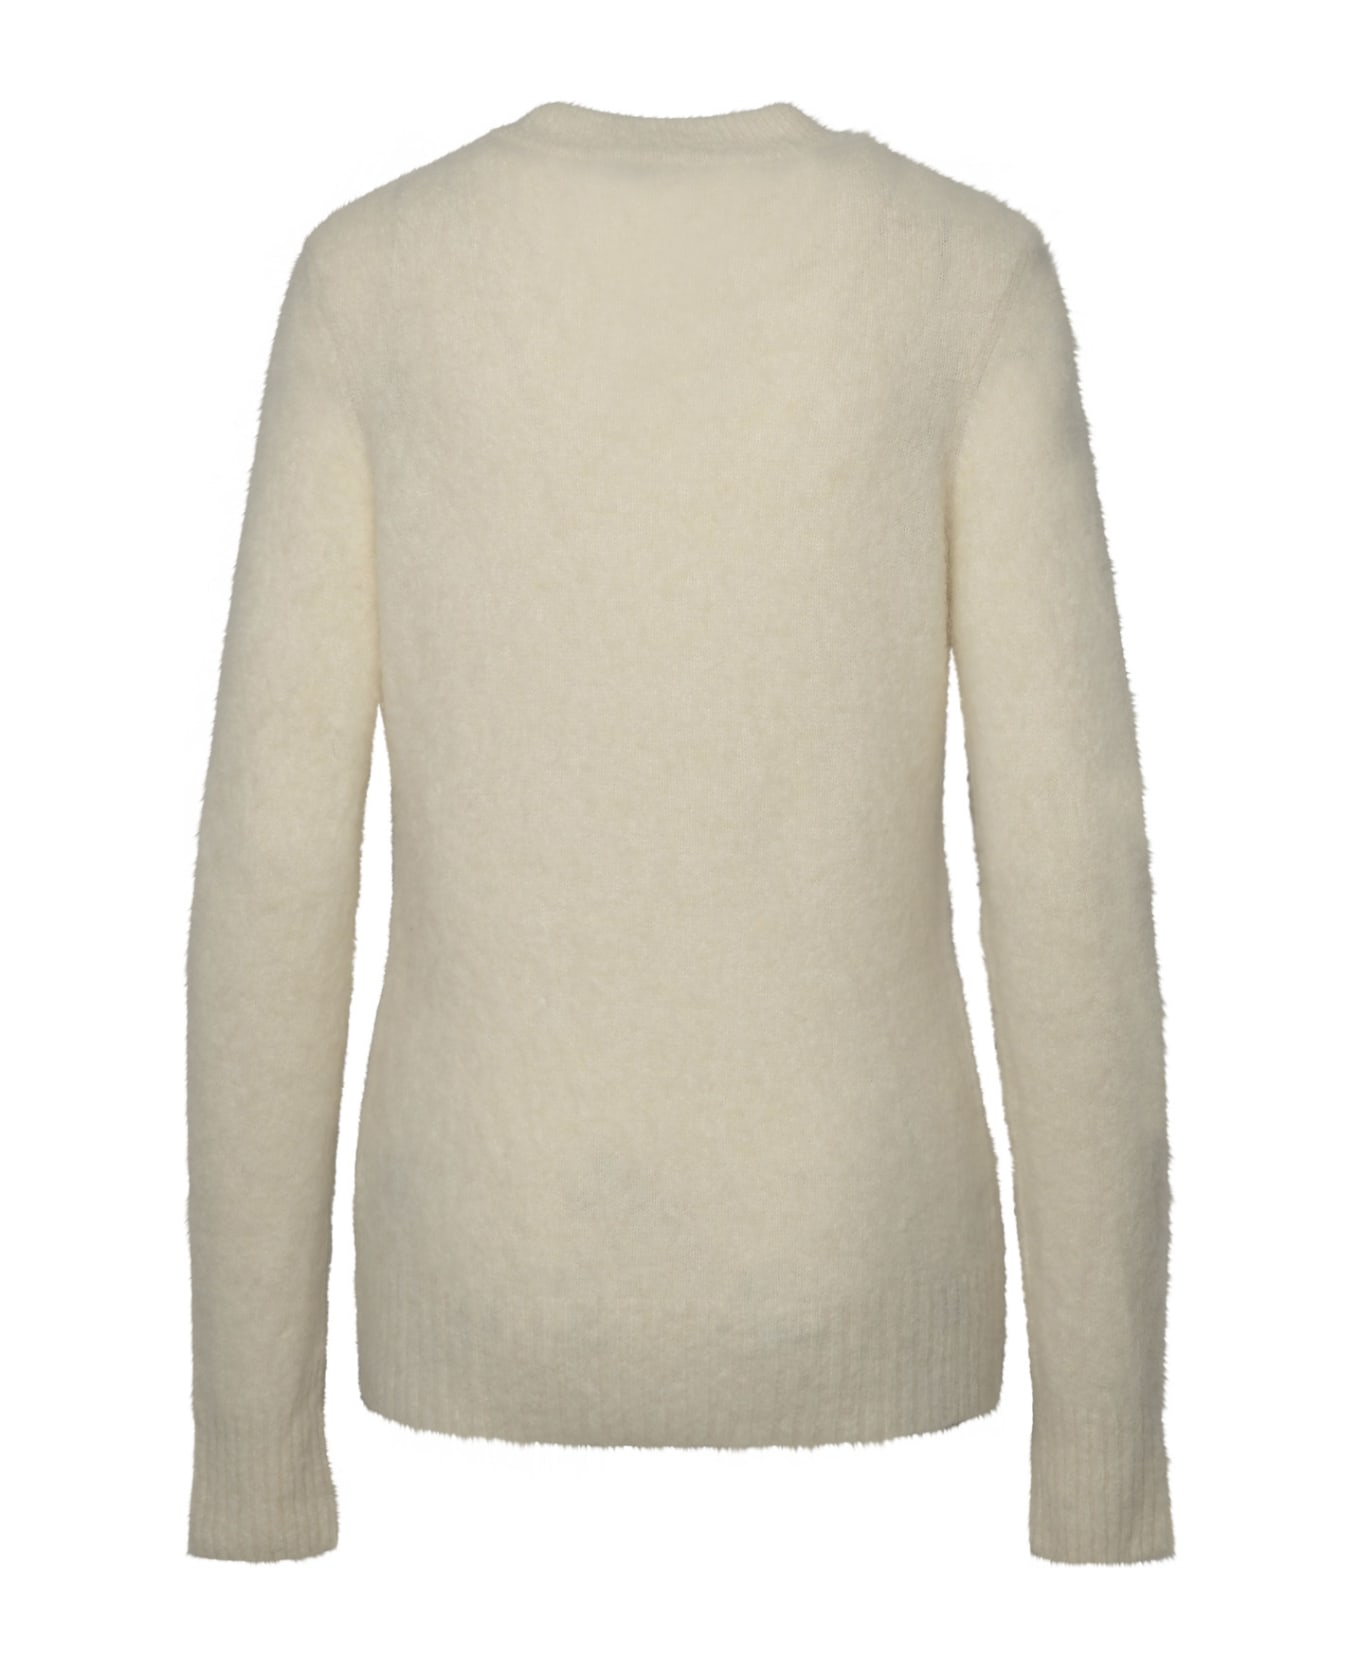 Ganni Ivory Brushed Alpaca Sweater - White ニットウェア